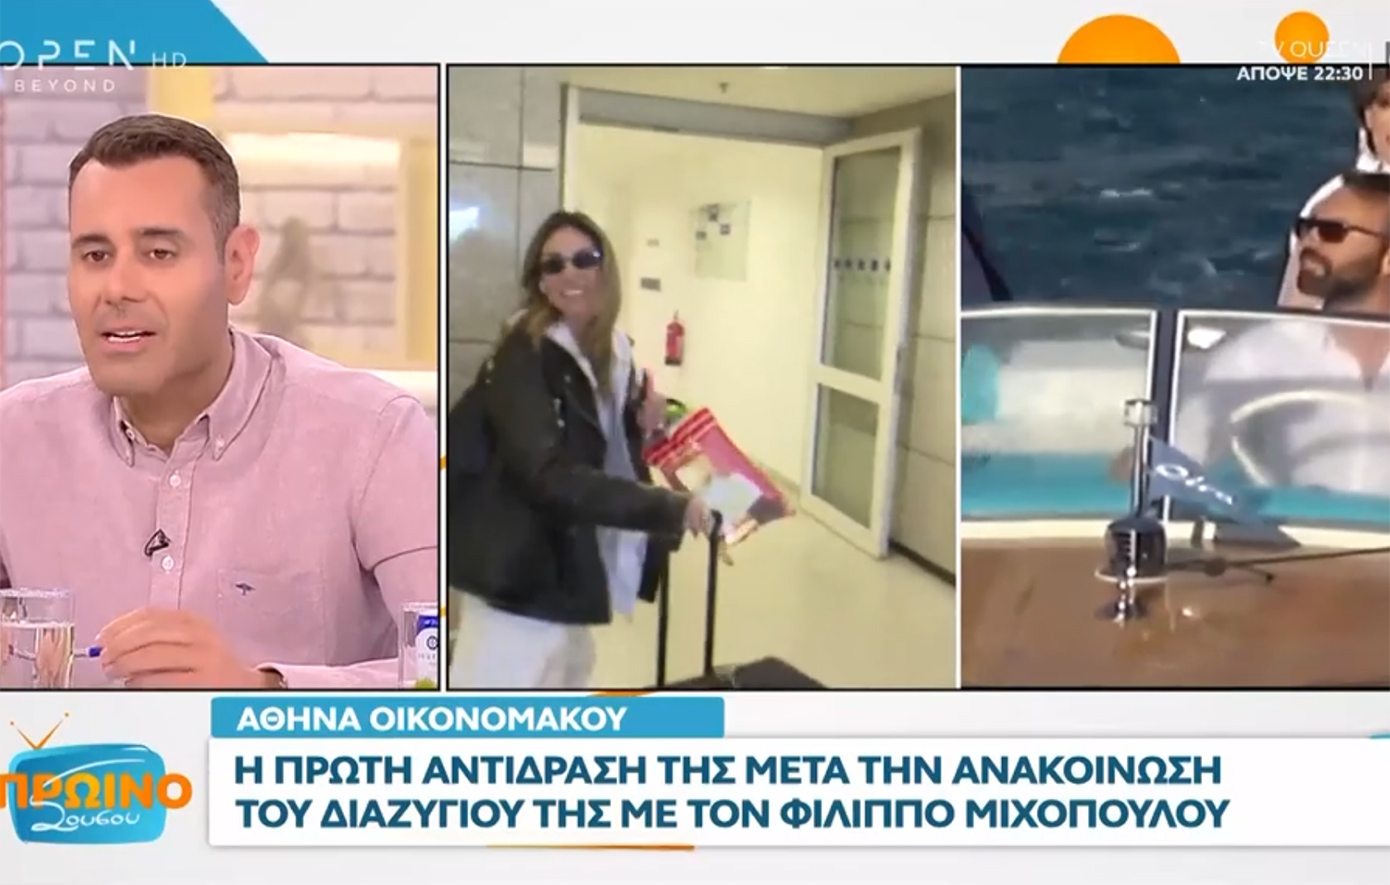 Νίκος Γεωργιάδης: «Η Αθηνά Οικονομάκου έχει ήδη γυρίσει σελίδα στη ζωή της»